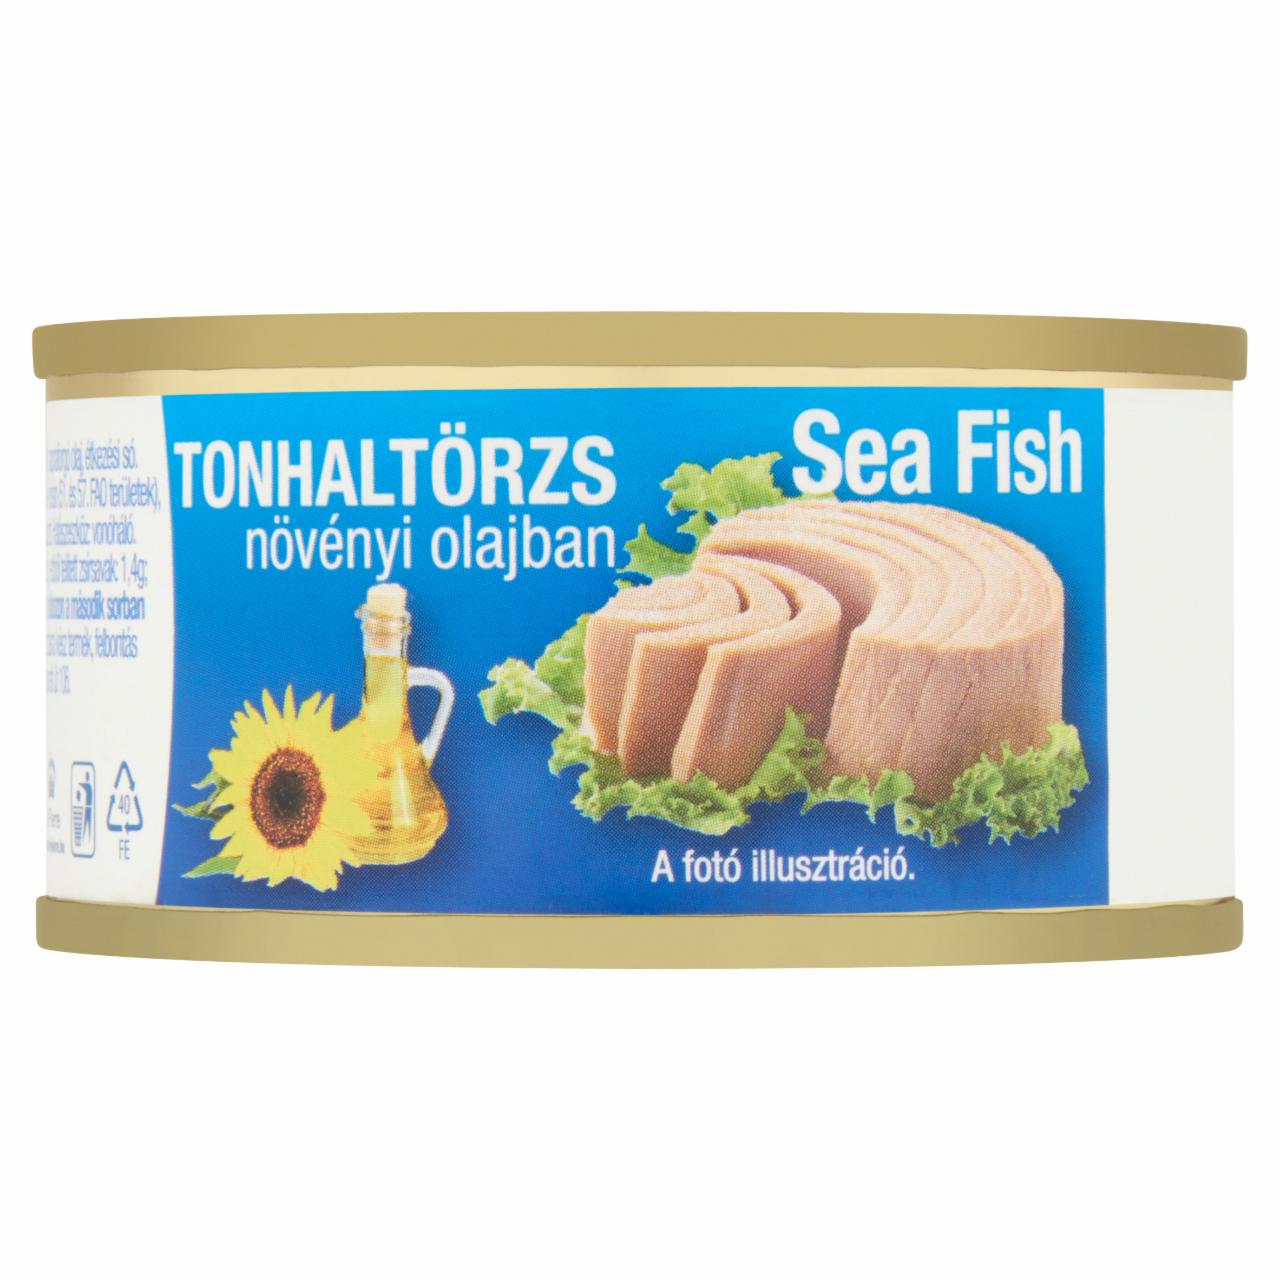 Képek - Sea Fish tonhaltörzs növényi olajban 80 g